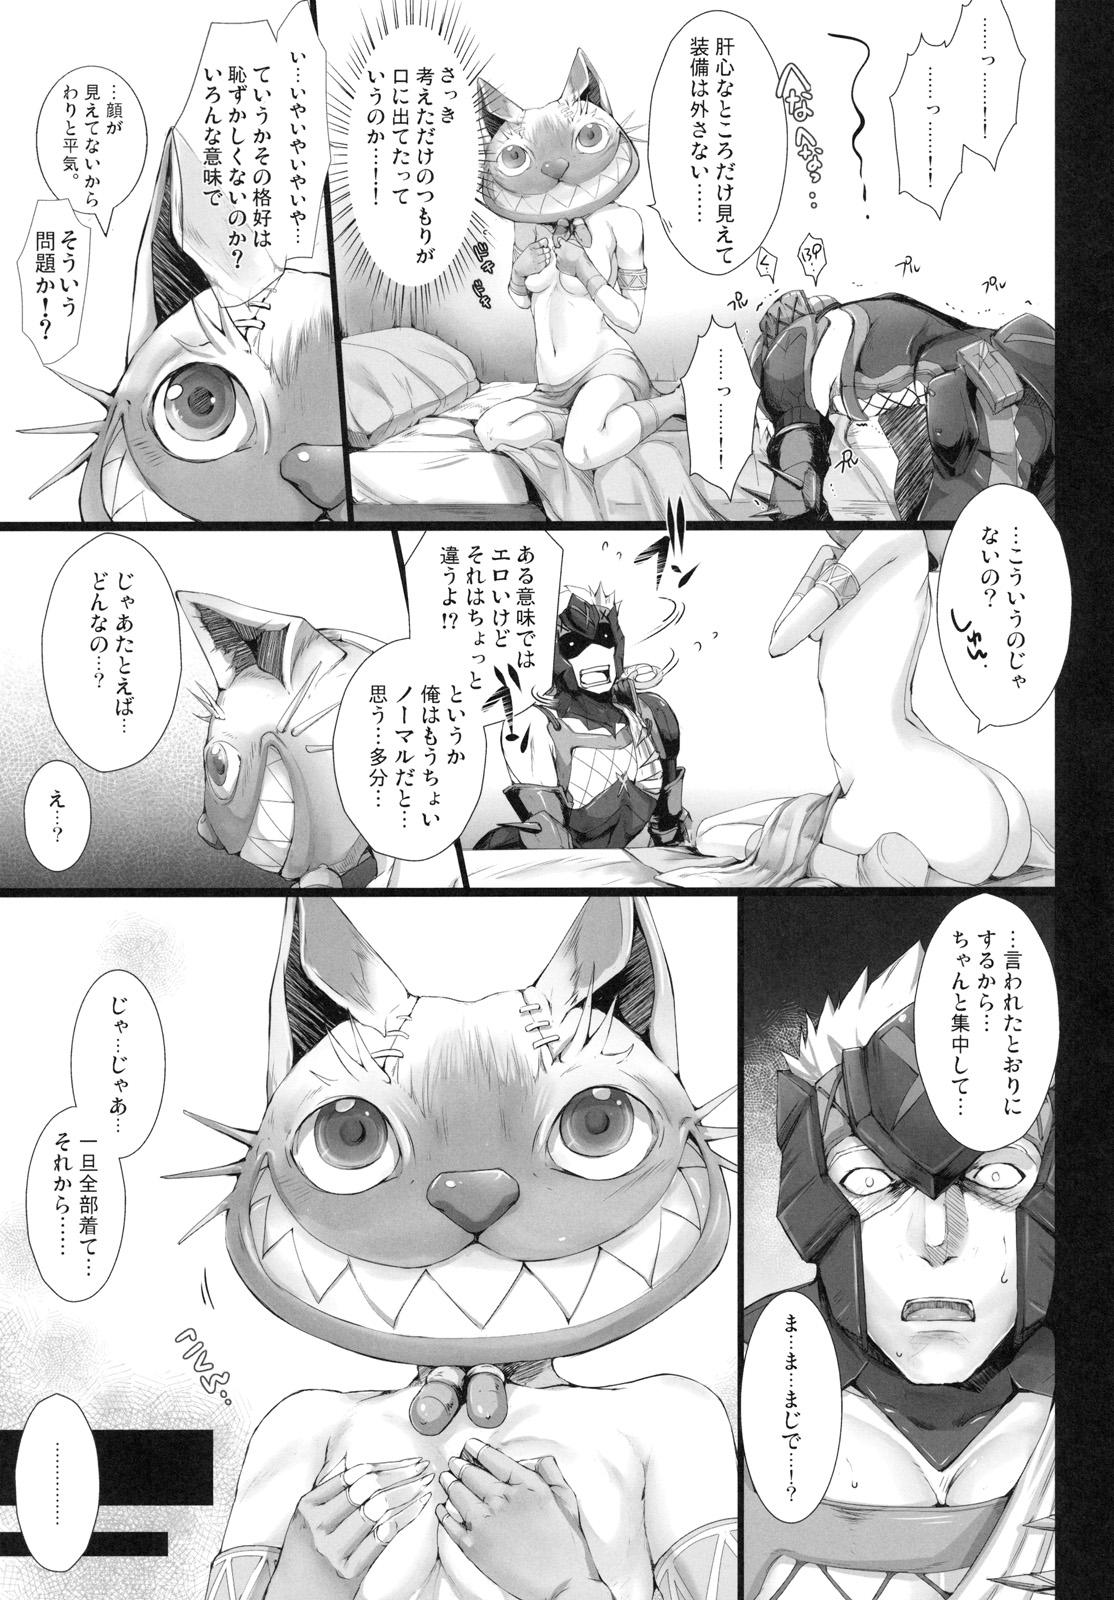 Novia Monhan no Erohon 10 - Monster hunter Cachonda - Page 8